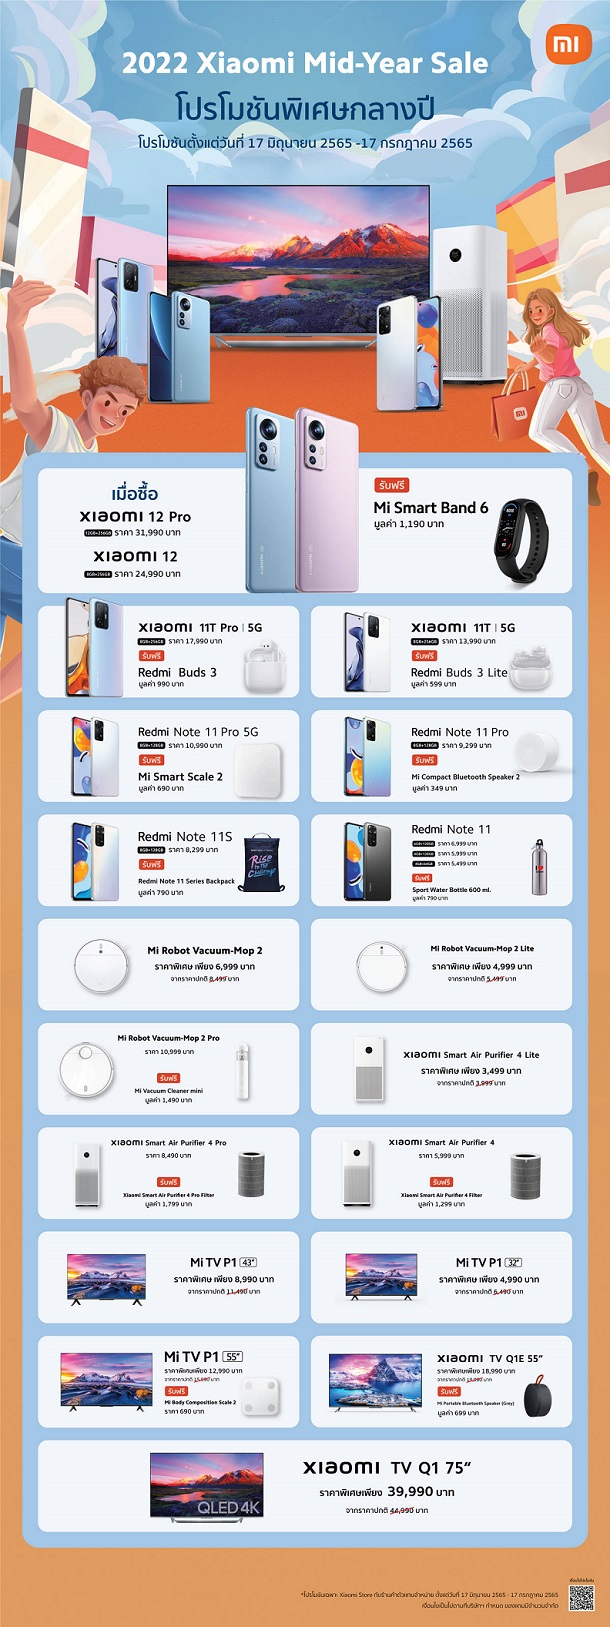 เสียวหมี่ขนทัพสมาร์ทโฟนและผลิตภัณฑ์ AIoT จัดโปรโมชั่นพิเศษในแคมเปญ 2022 Xiaomi Mid-Year Sale ในระหว่างวันที่ 17 มิ.ย. – 17 ก.ค. นี้เท่านั้น